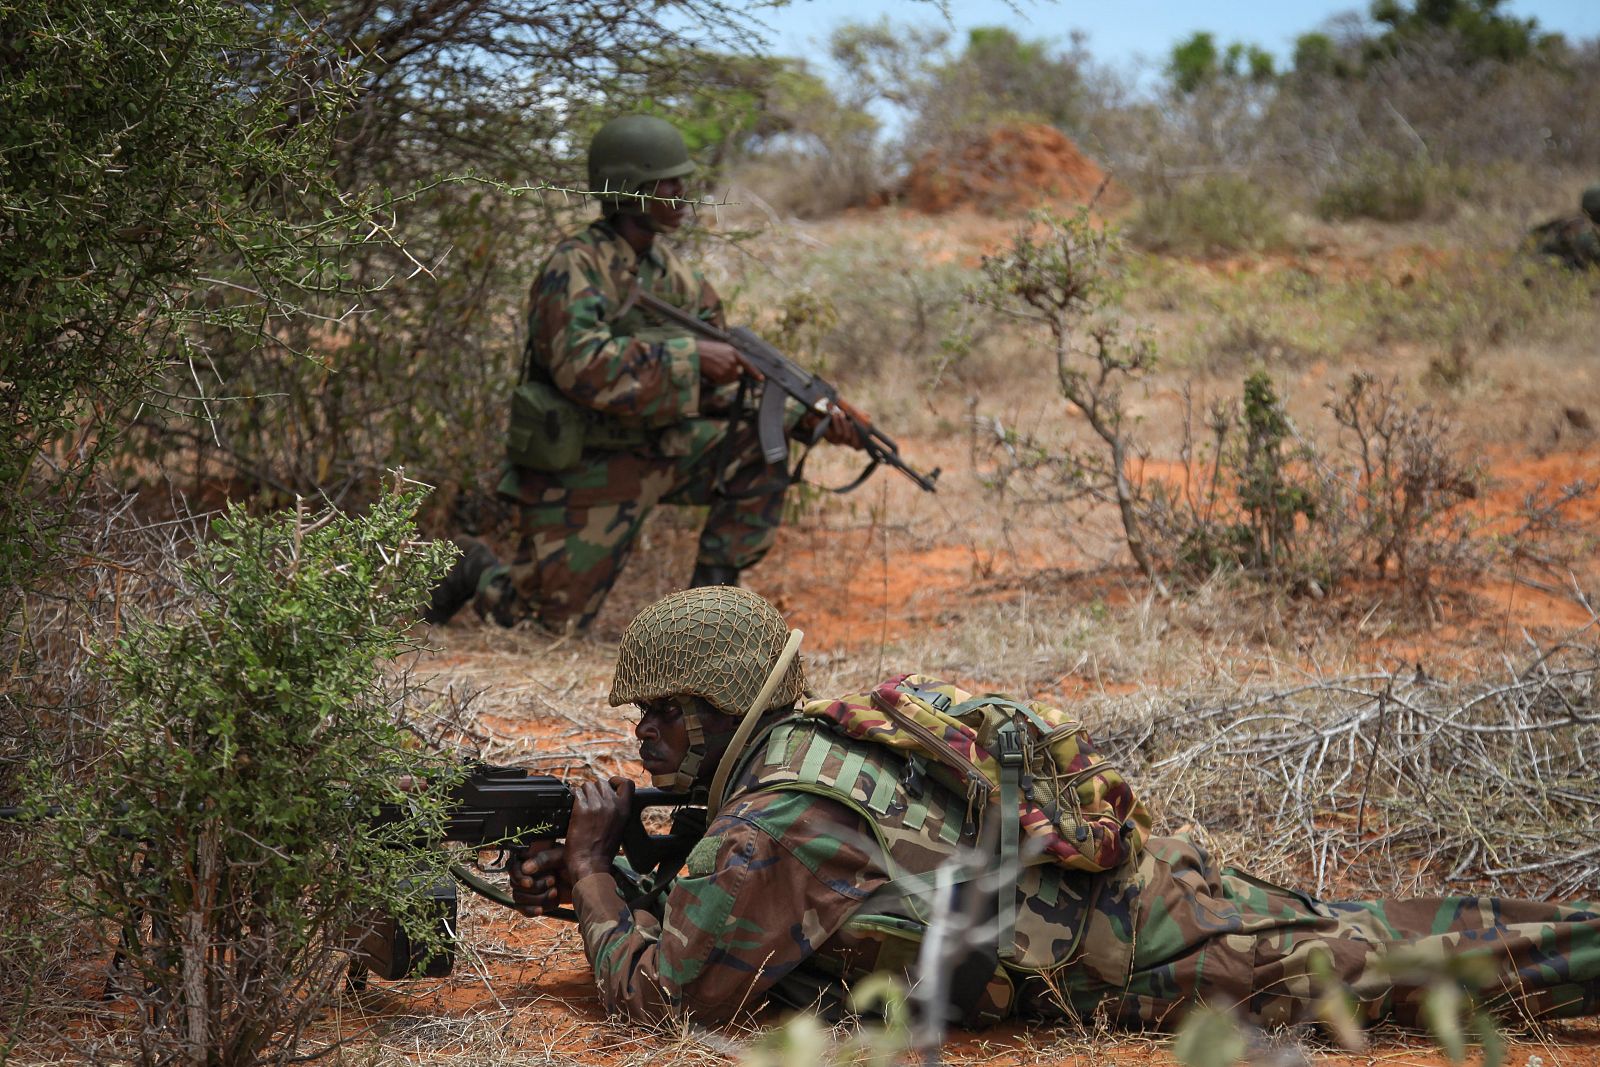 Fotografía de miembros de la fuerza de la Unión Africana en Somalia